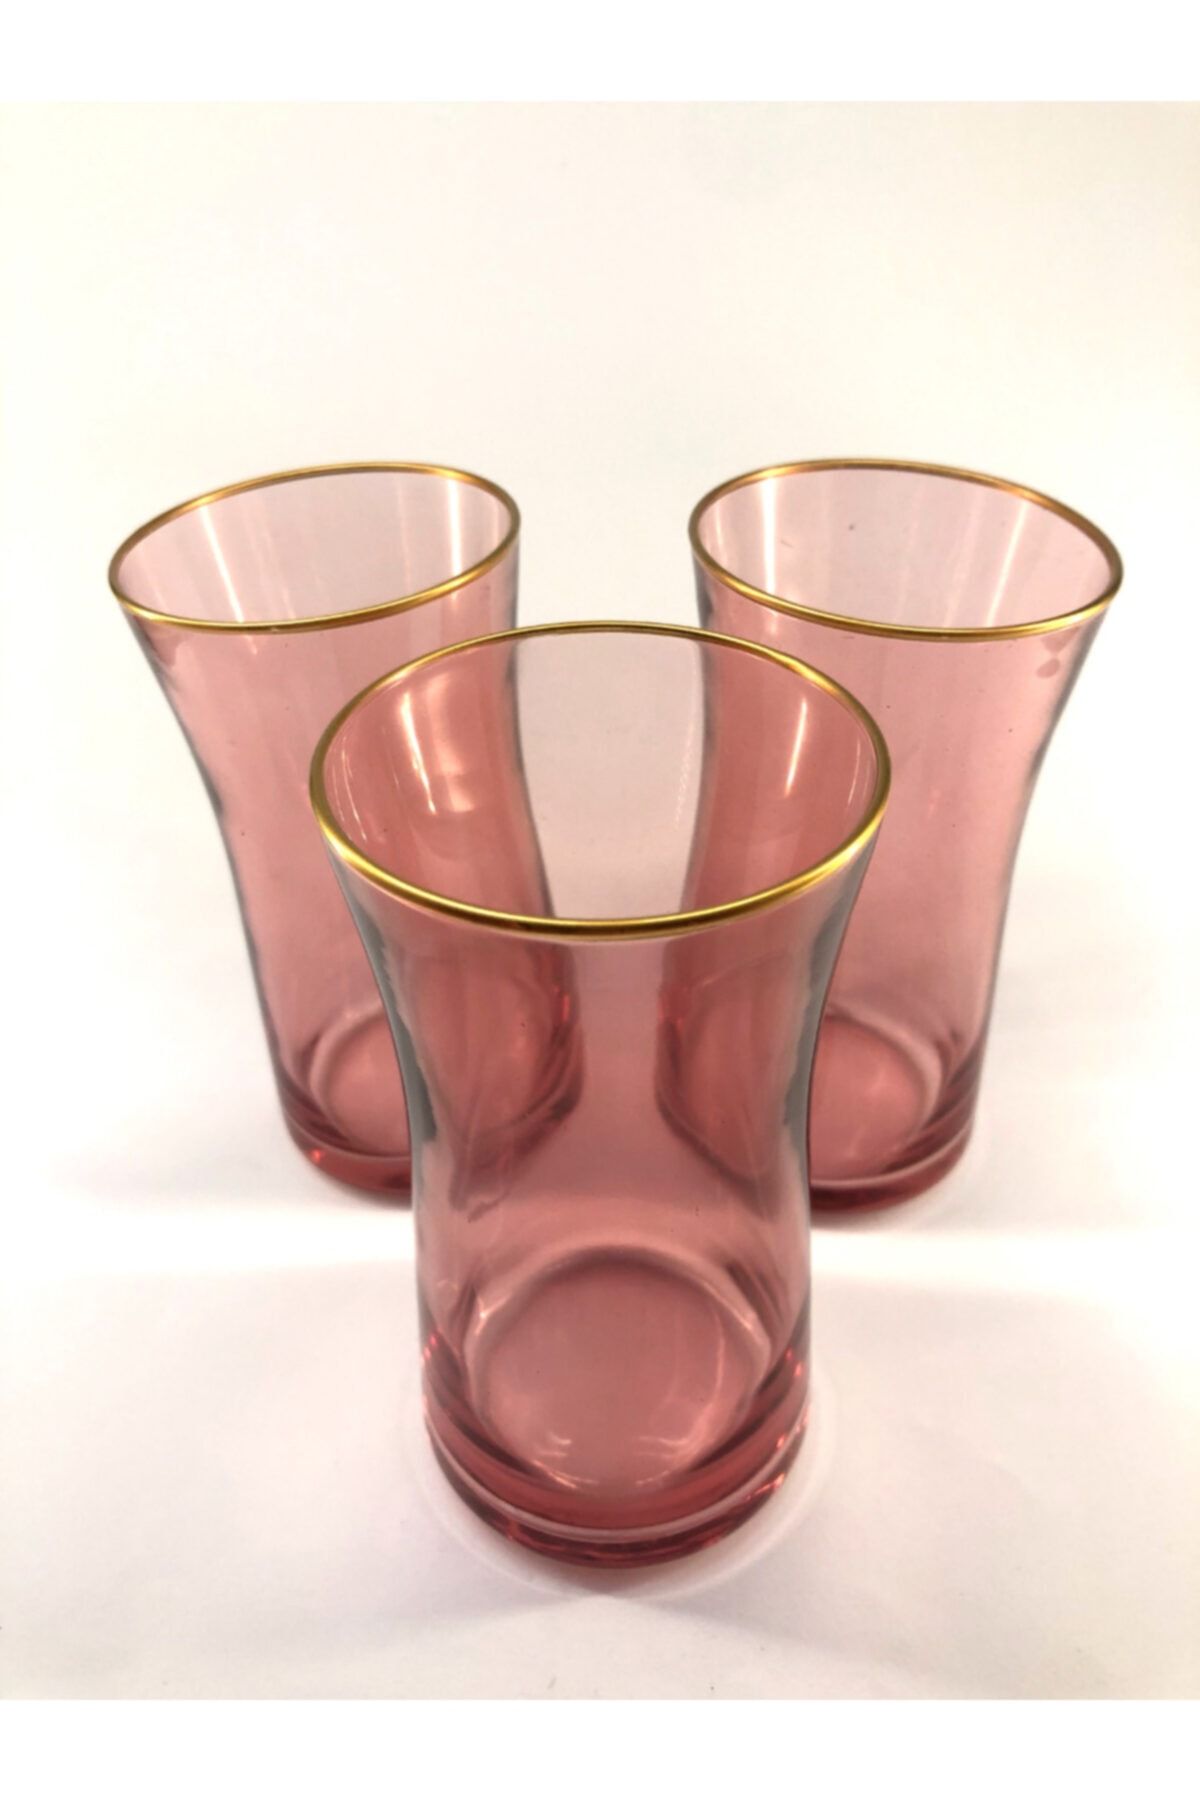 Rakle Neo Pembe Renkli Uzun Meşrubat Bardağı 3'lü